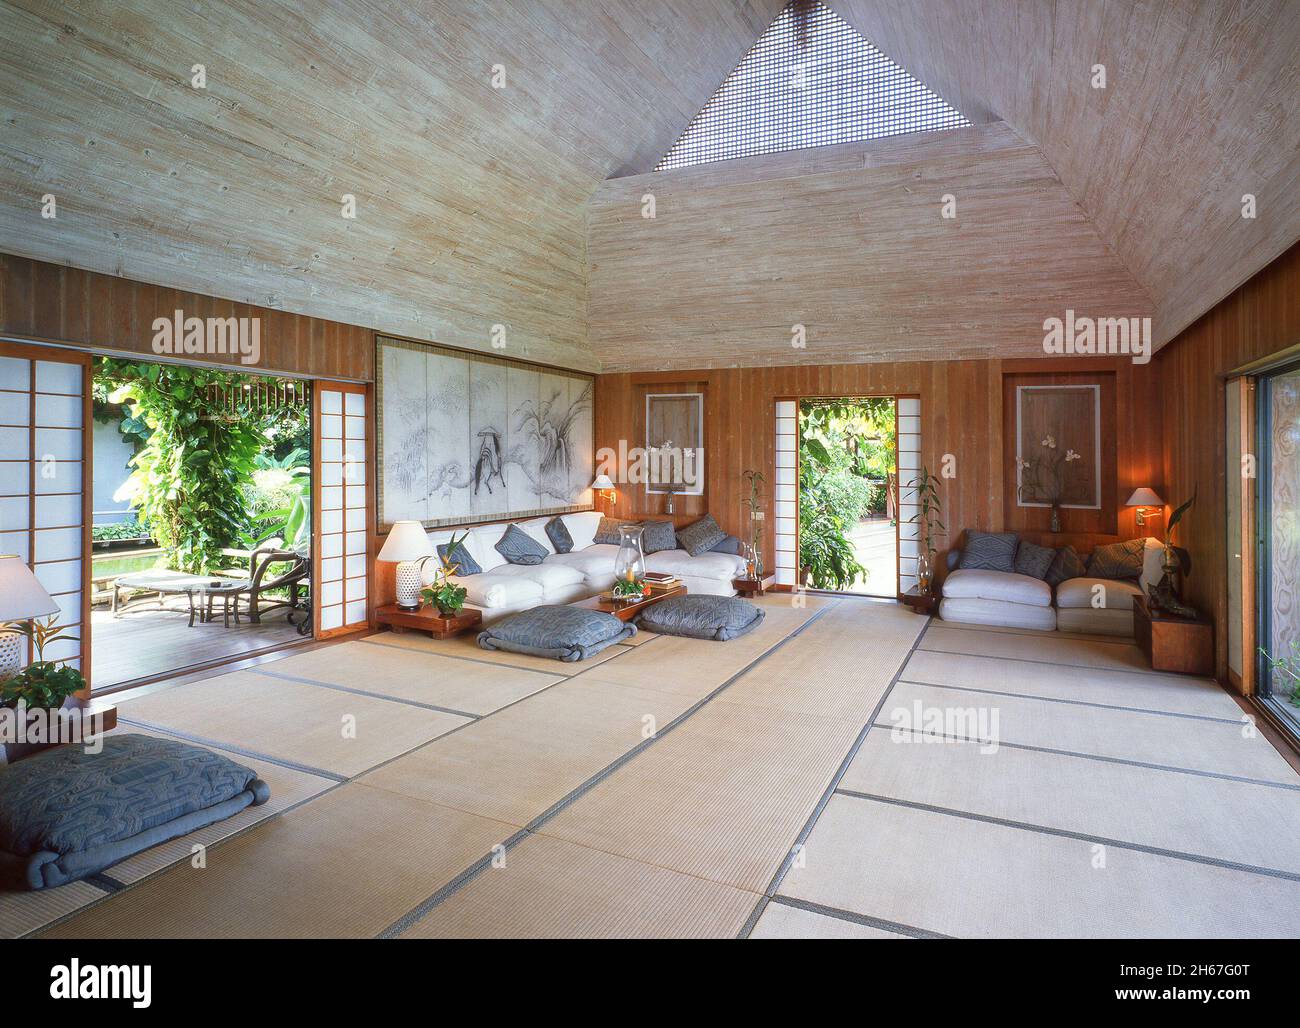 L'intérieur de la salle de séjour d'inspiration japonaise de Shogun, la maison mustique de l'architecte Arne Hasselqvist Caraïbes Antilles Banque D'Images